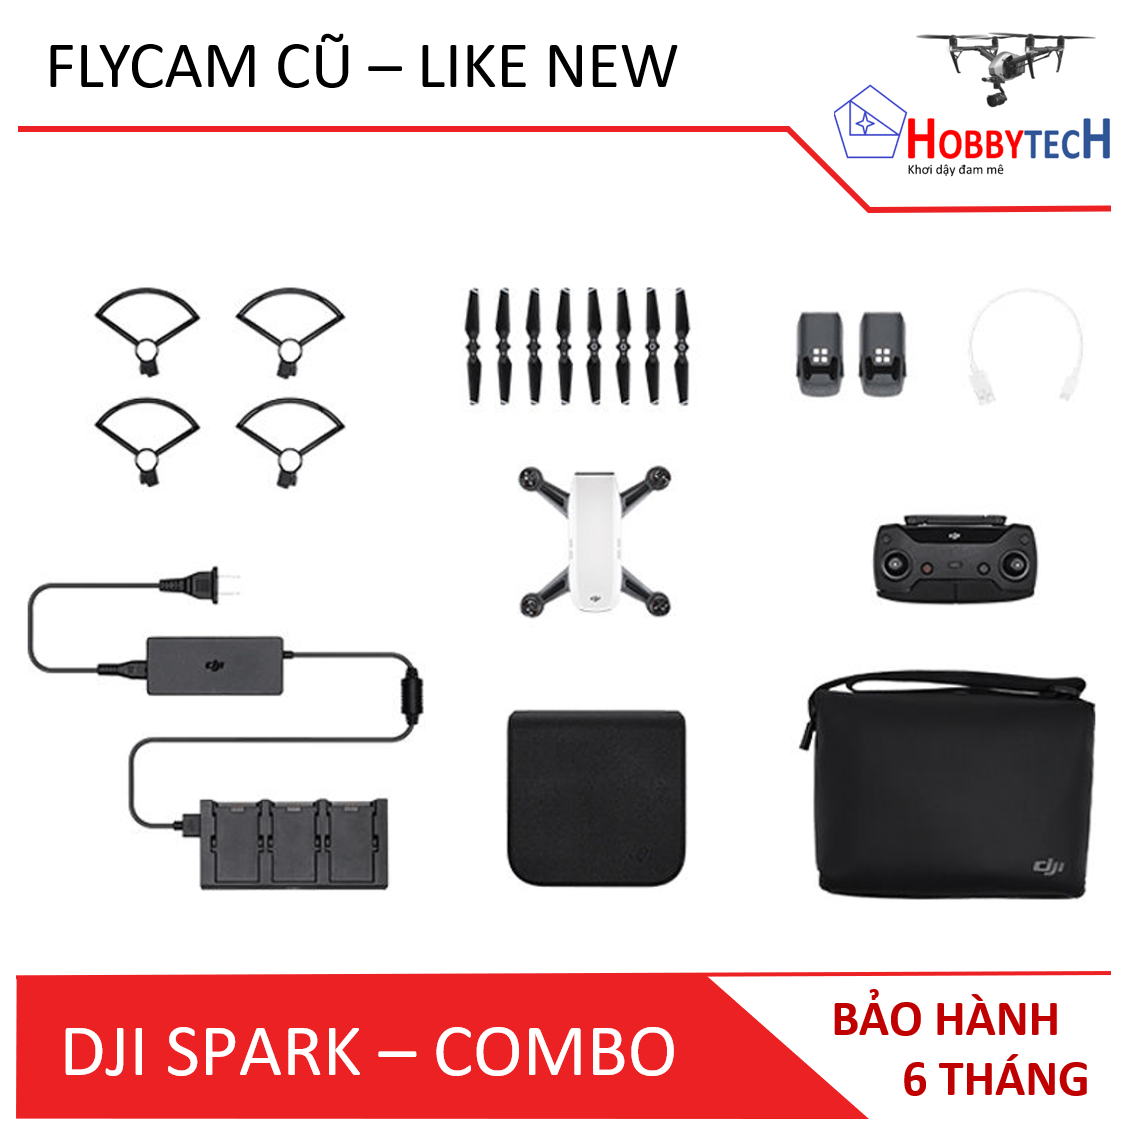 Flycam DJI Spark combo – Cũ (Like new)